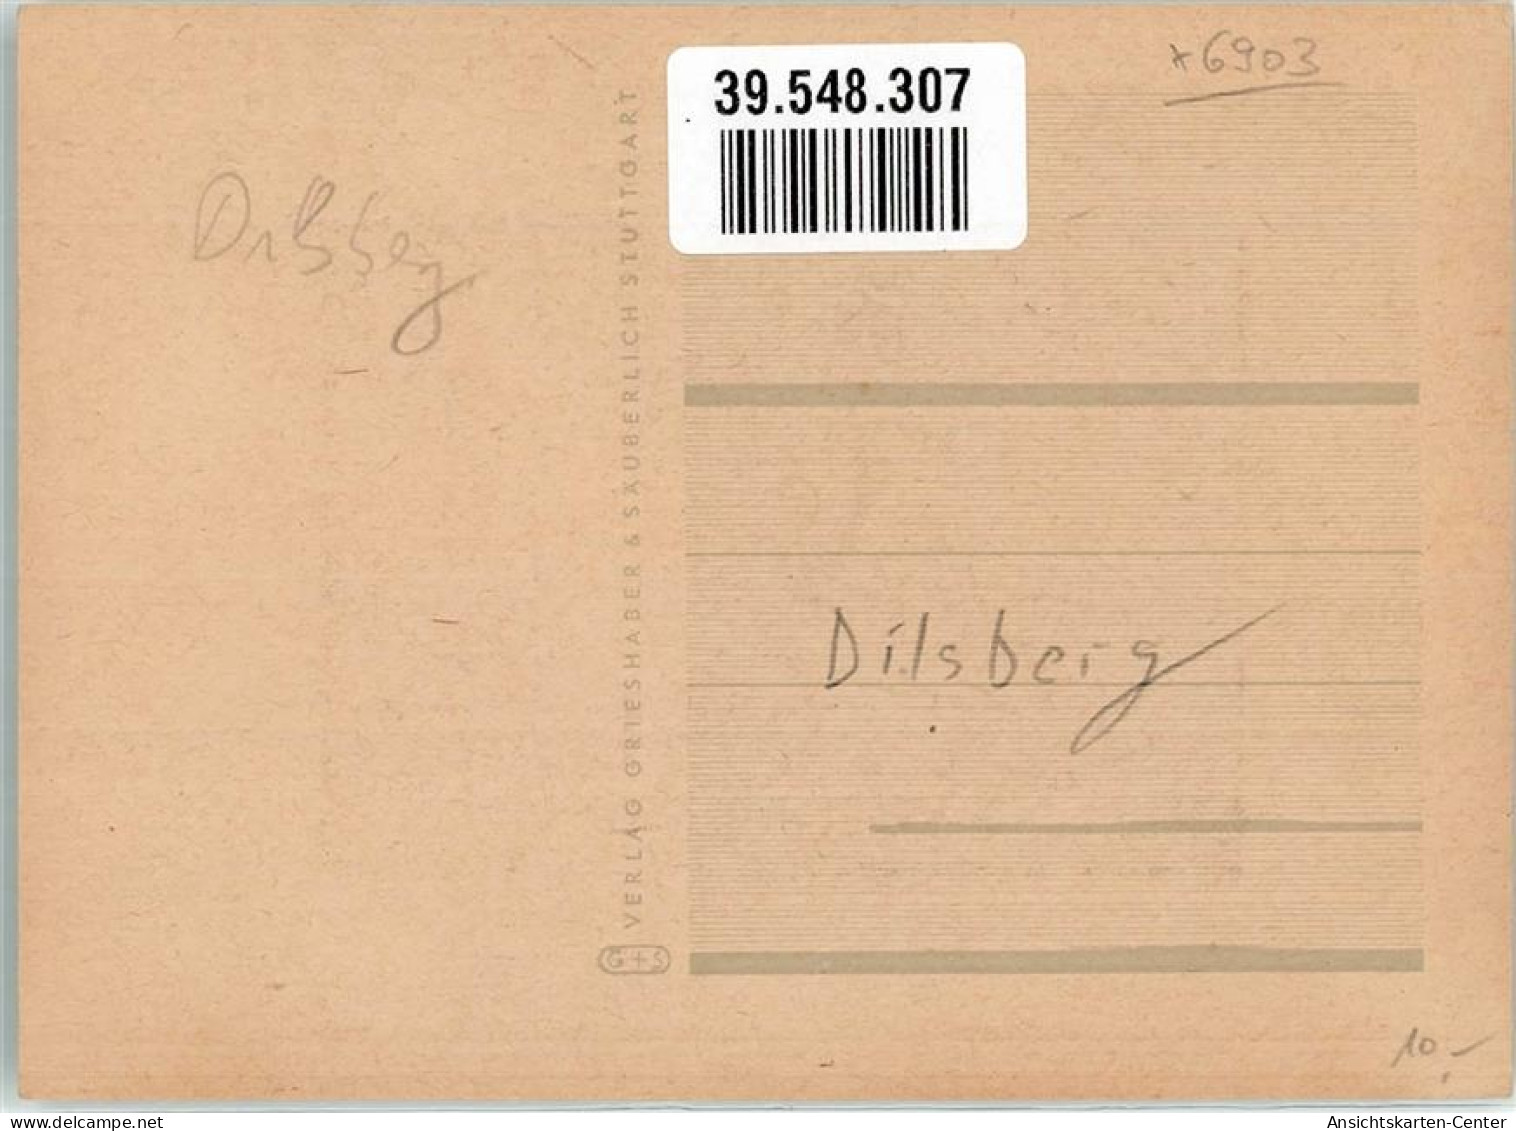 39548307 - Dilsberg - Neckargemünd